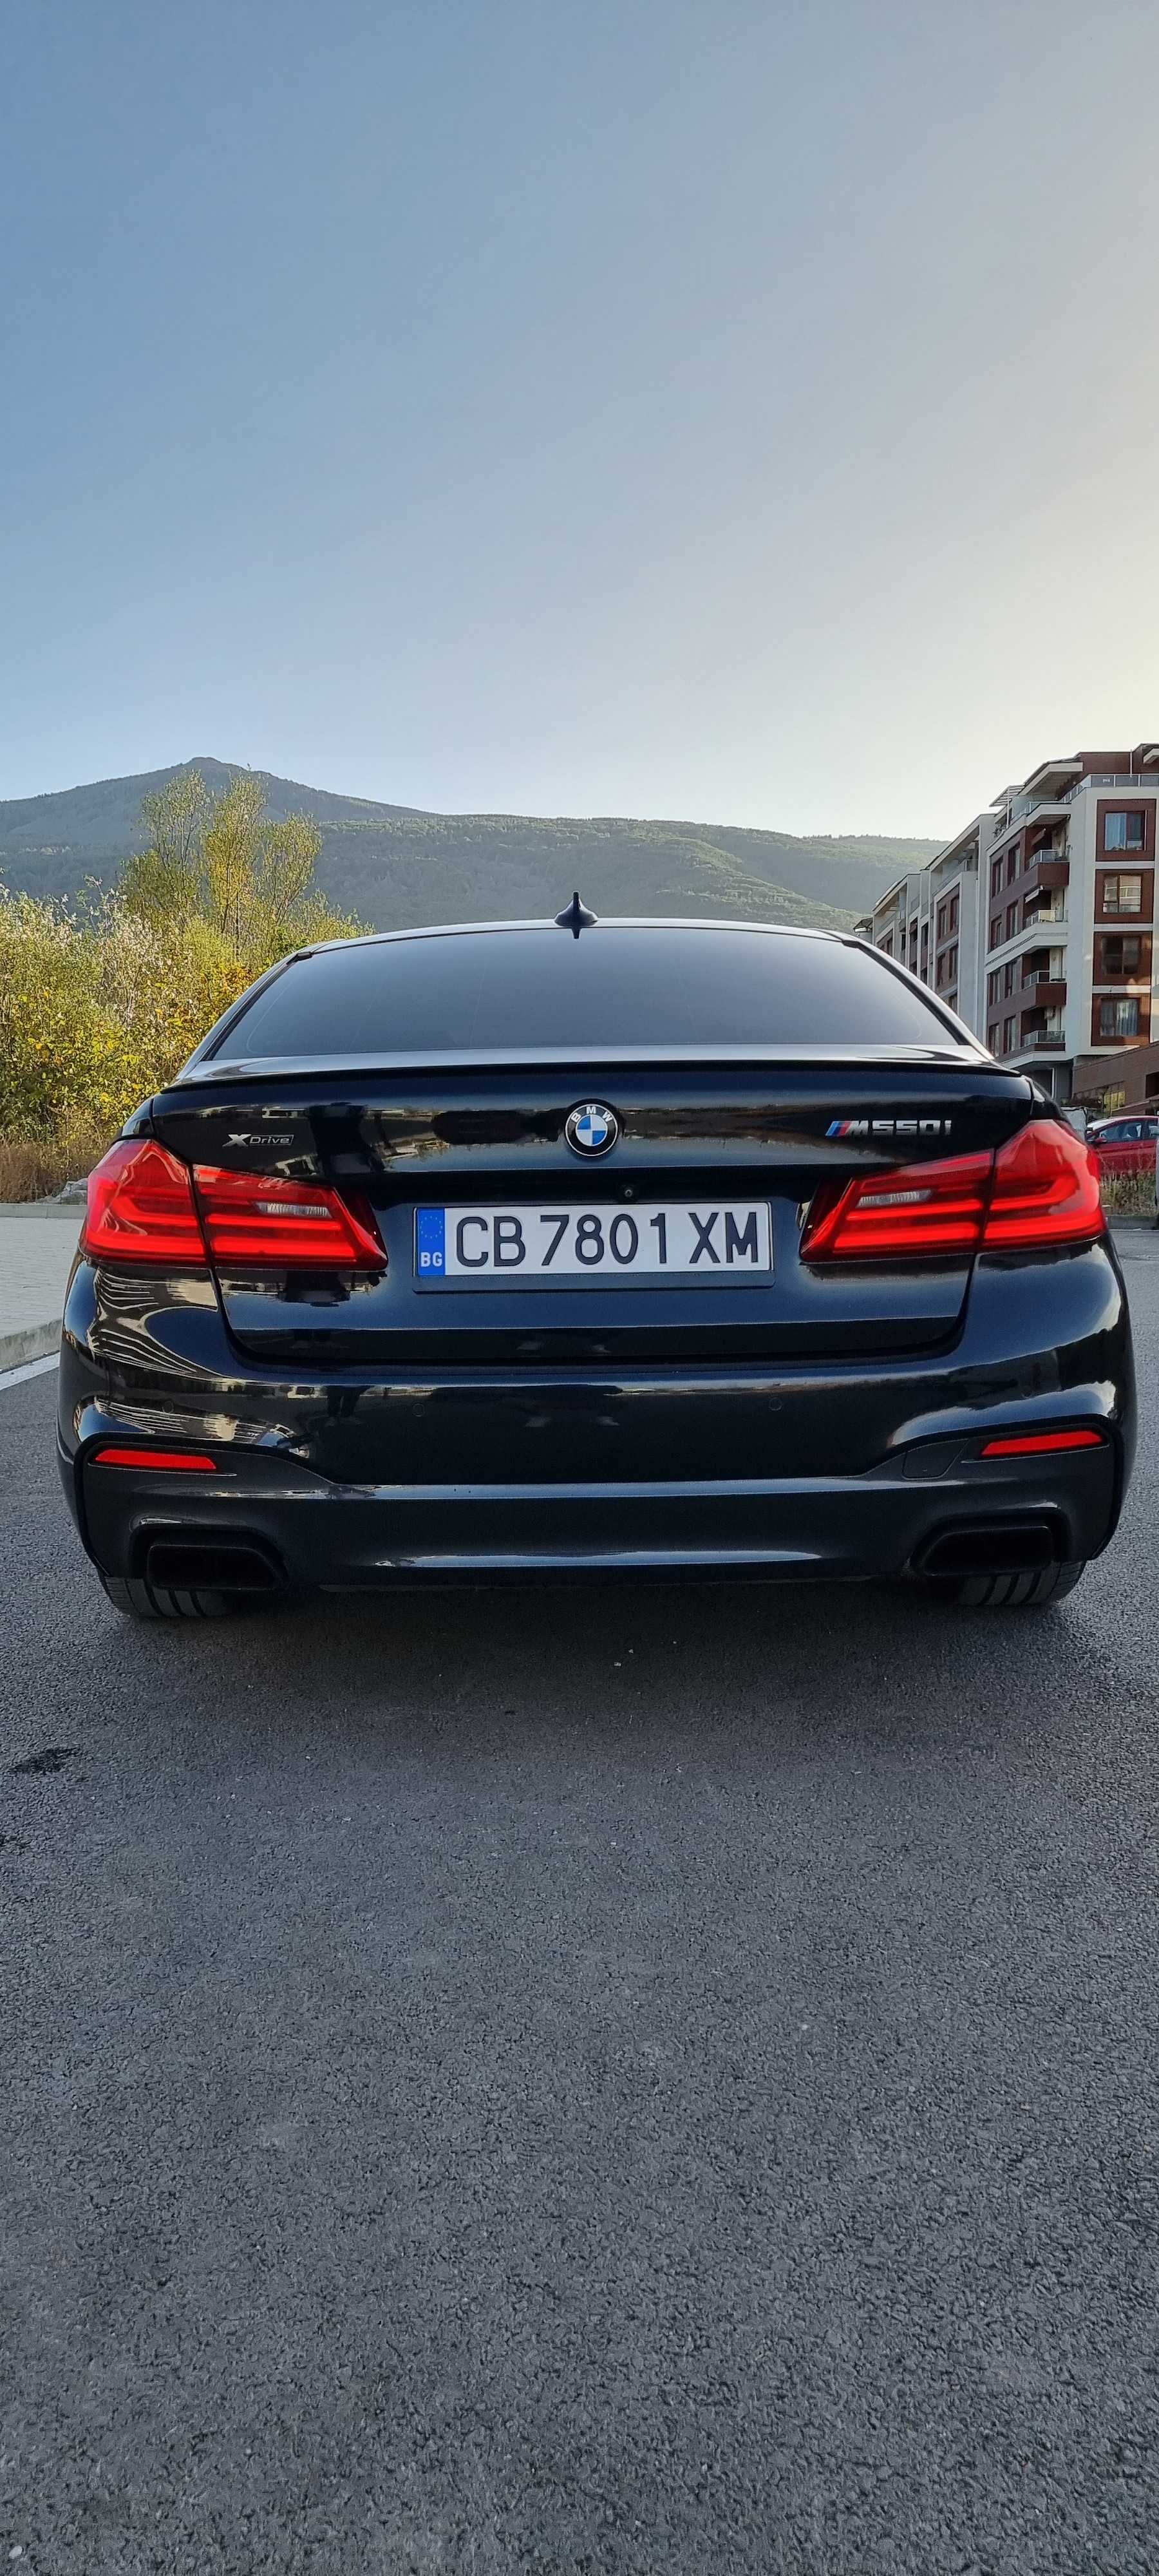 BMW 2018 M550i Xdrive 4.4L v8 462к.с.